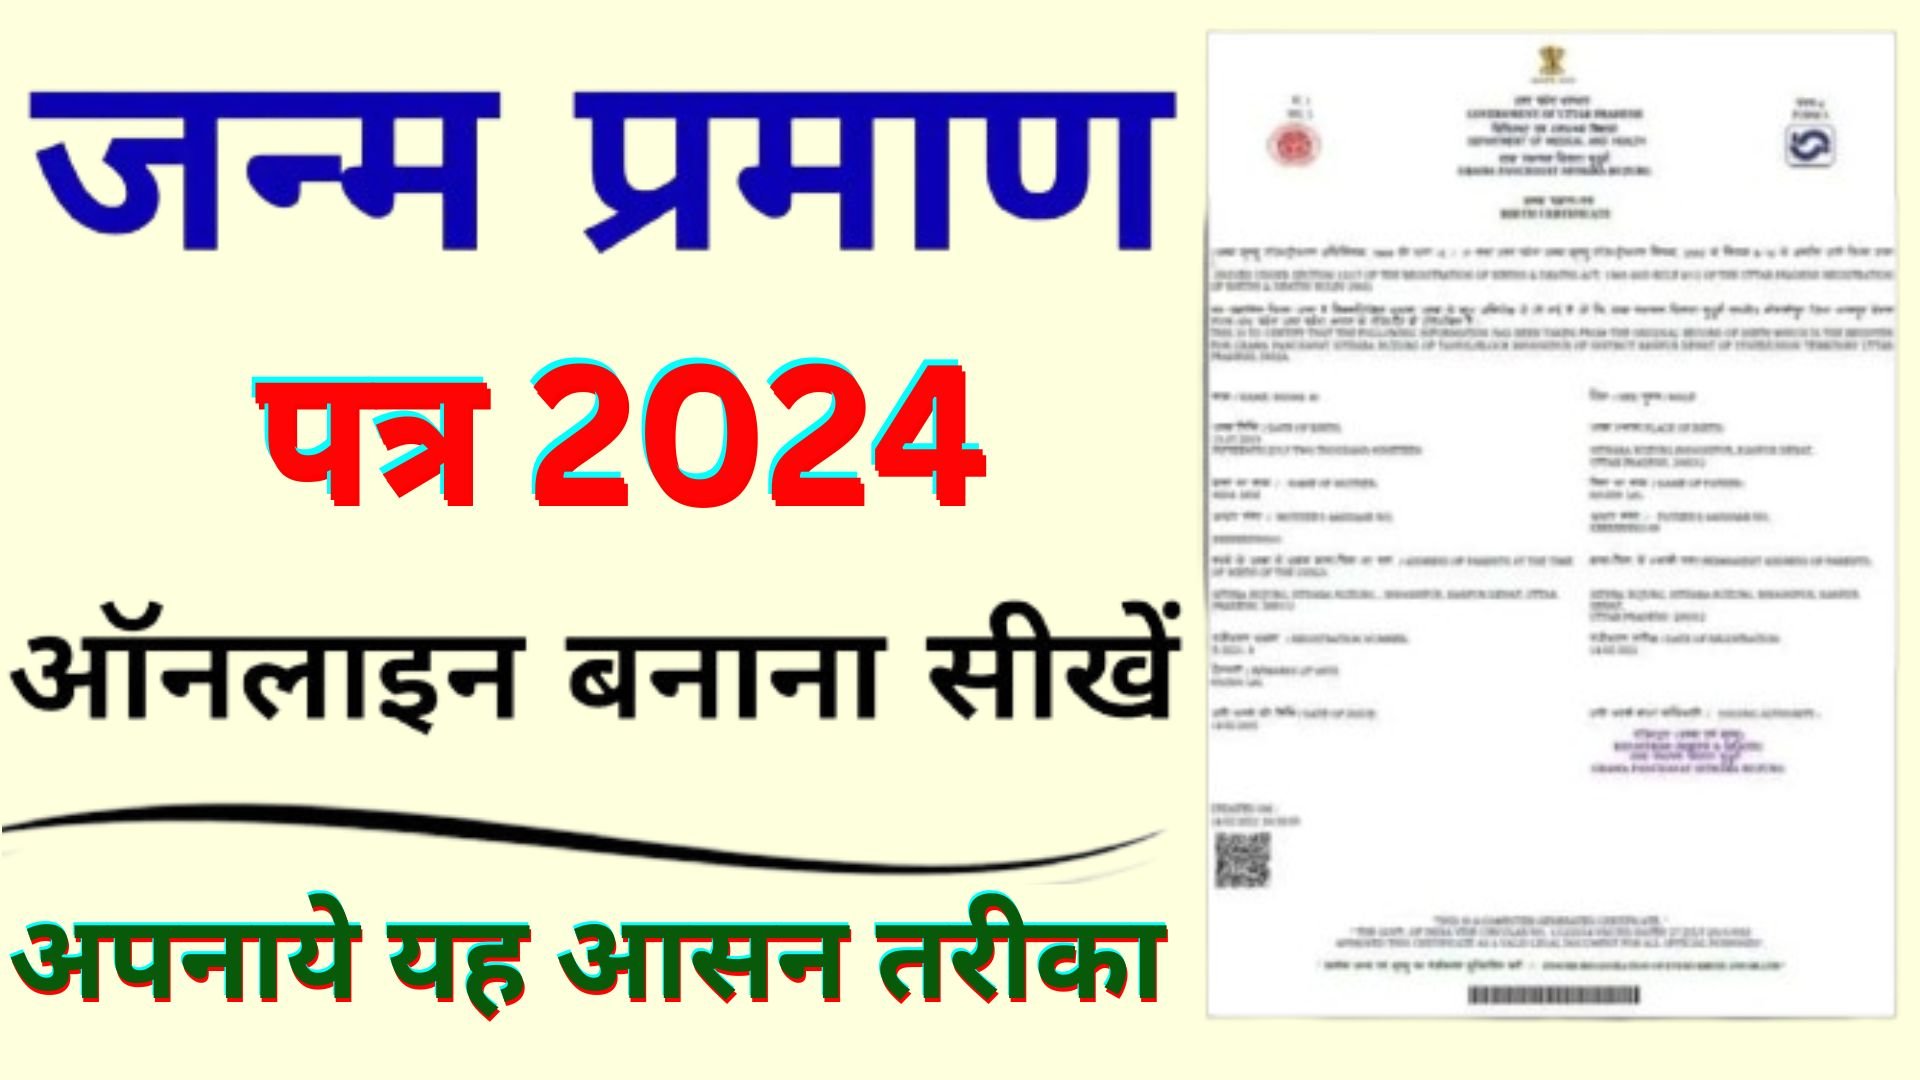 Janam Praman Patra Kaise Banaye 2024 : Birth Certificate Kaise Banaye Online | Birth Certificate 2024